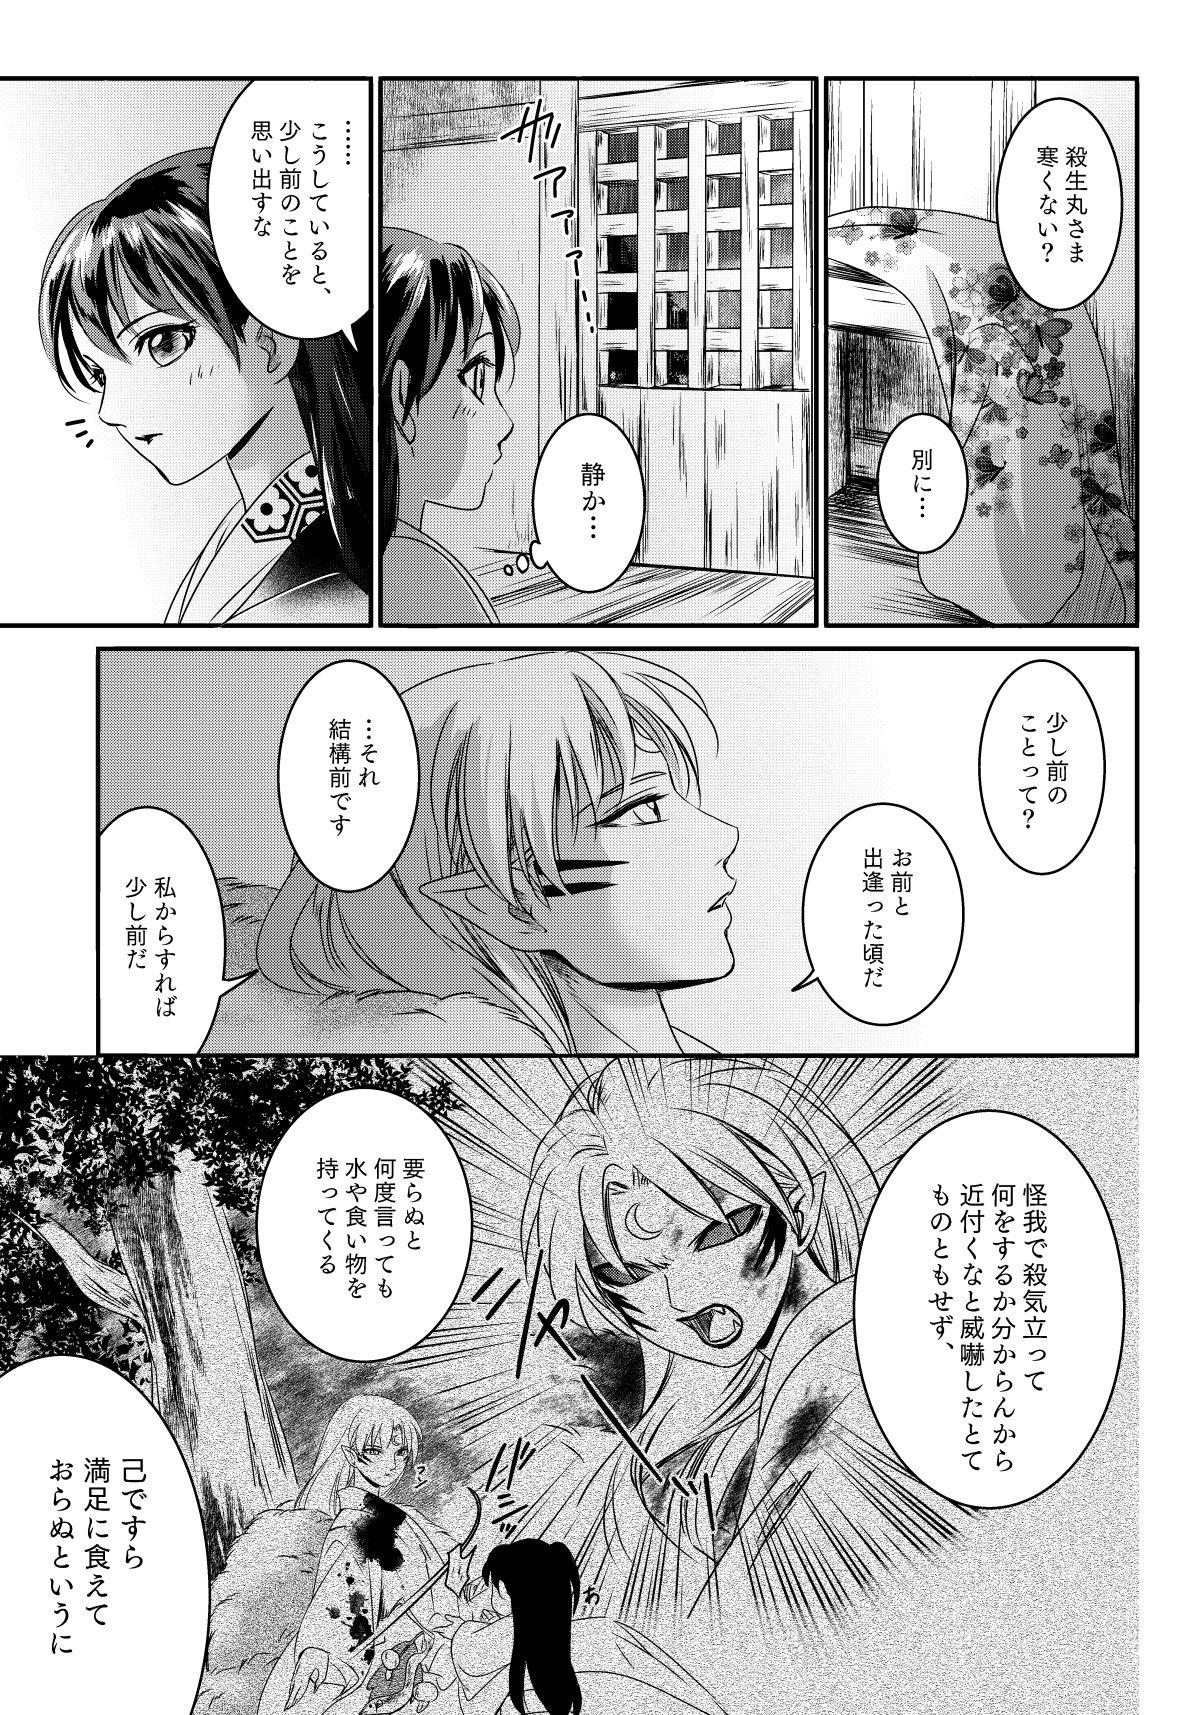 Casada Ame no Hi wa Yukkuri Amayadori - Inuyasha Leather - Page 6